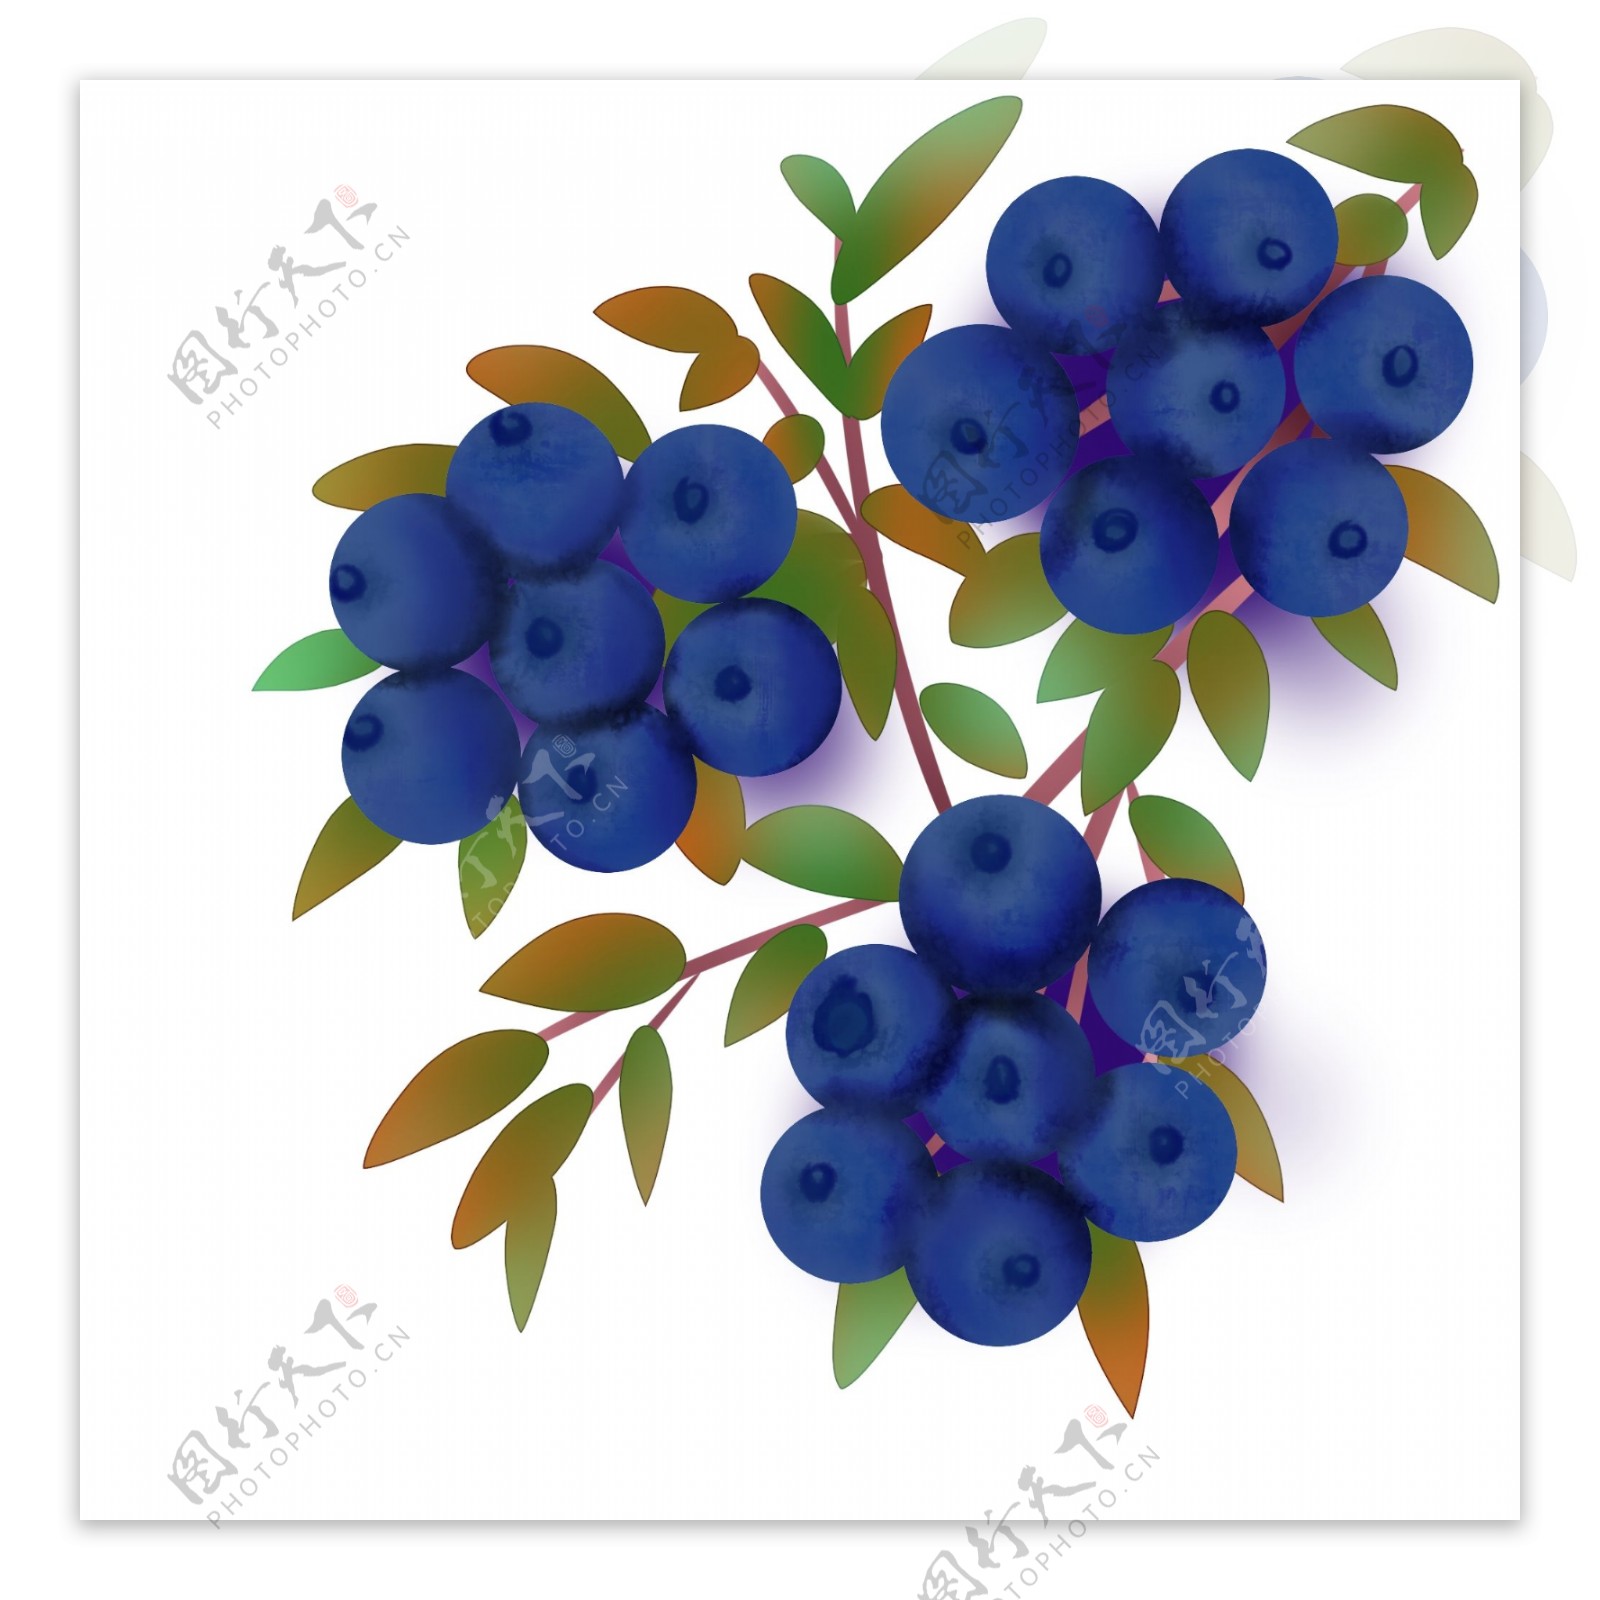 水果手绘蓝莓浆果丛